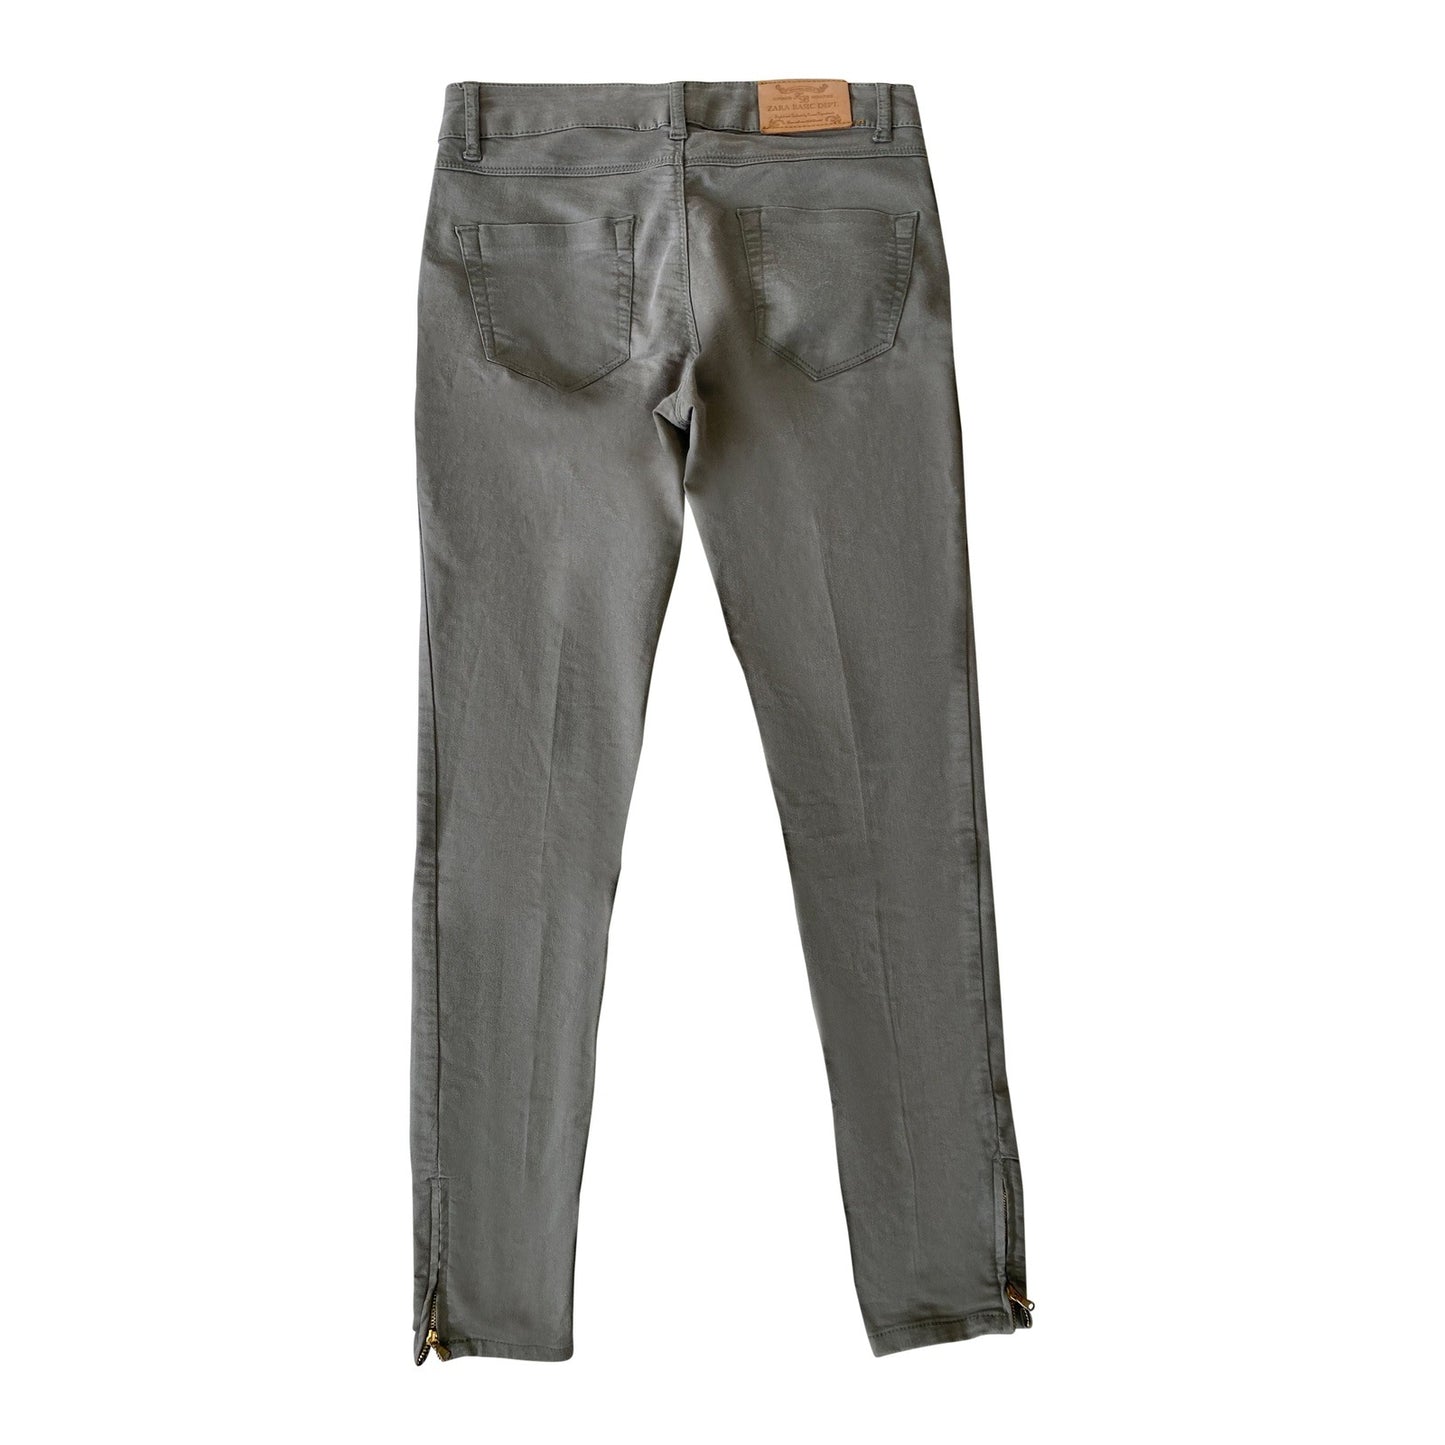 Zara olive skinny jeans | size 36